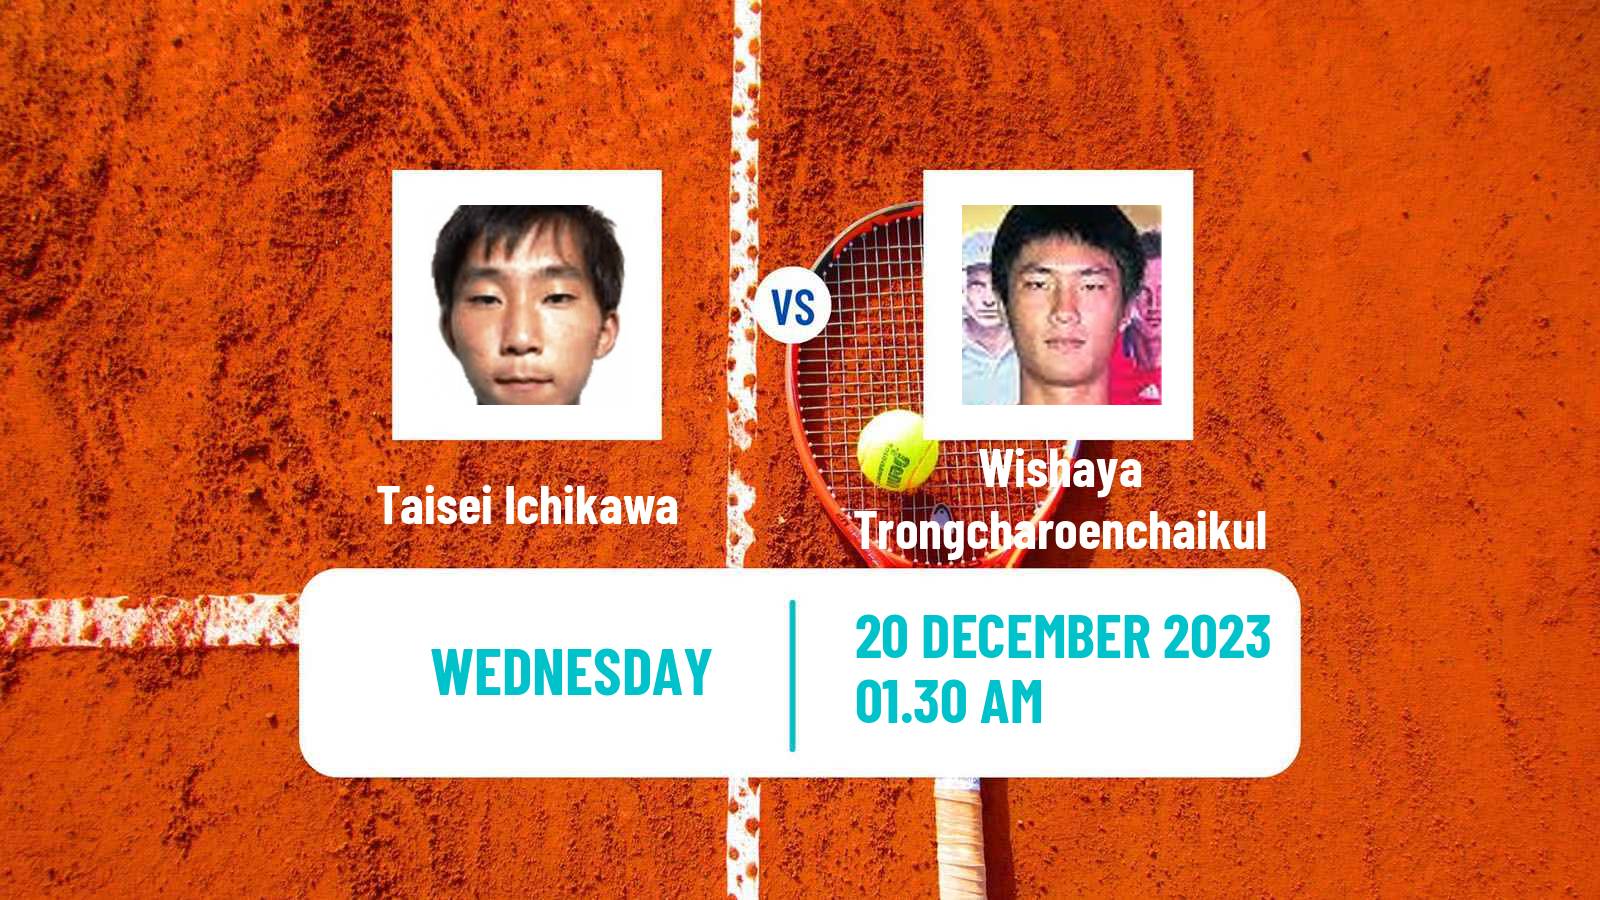 Tennis ITF M15 Yanagawa Men Taisei Ichikawa - Wishaya Trongcharoenchaikul